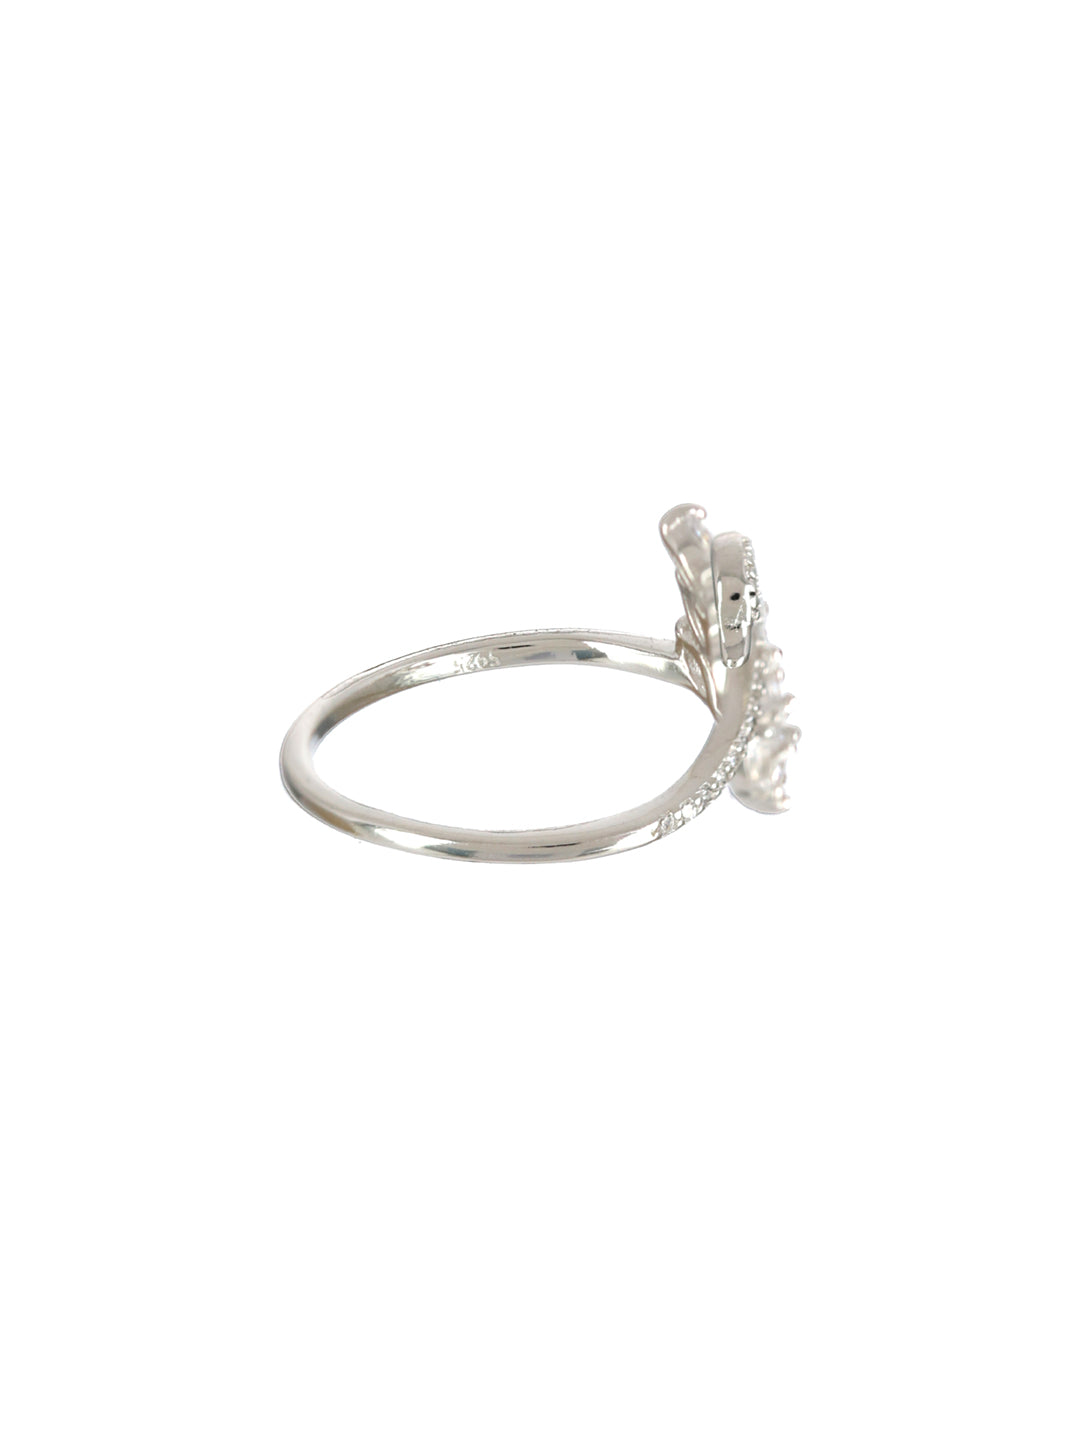 Sheer by Priyaasi Swan American Diamond Sterling Silver Ring